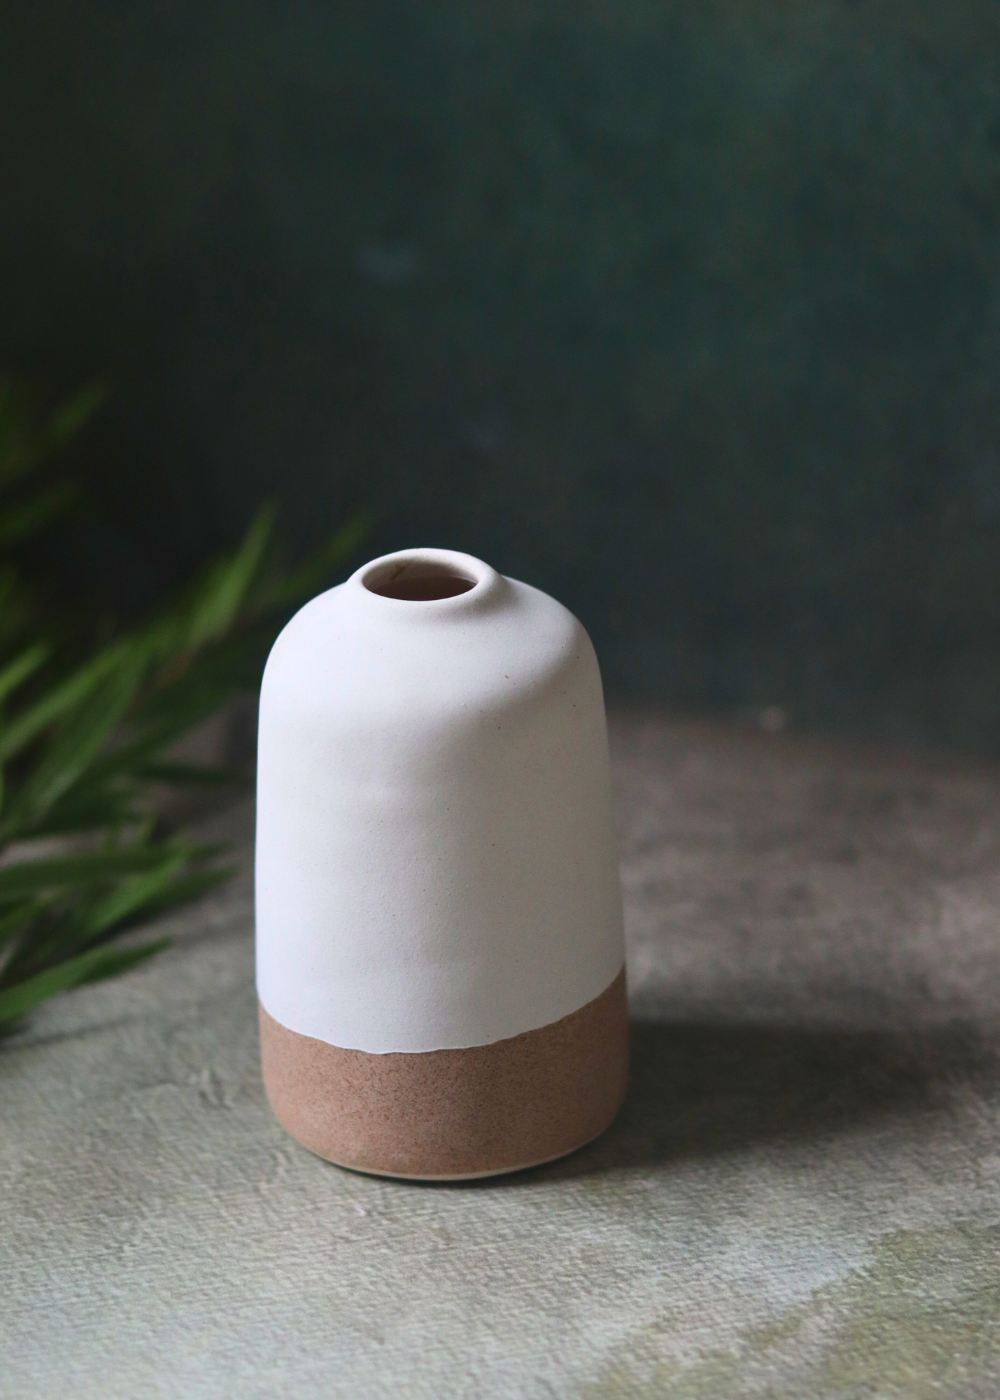 Handmade ceramic white & sanded bud vase - tall